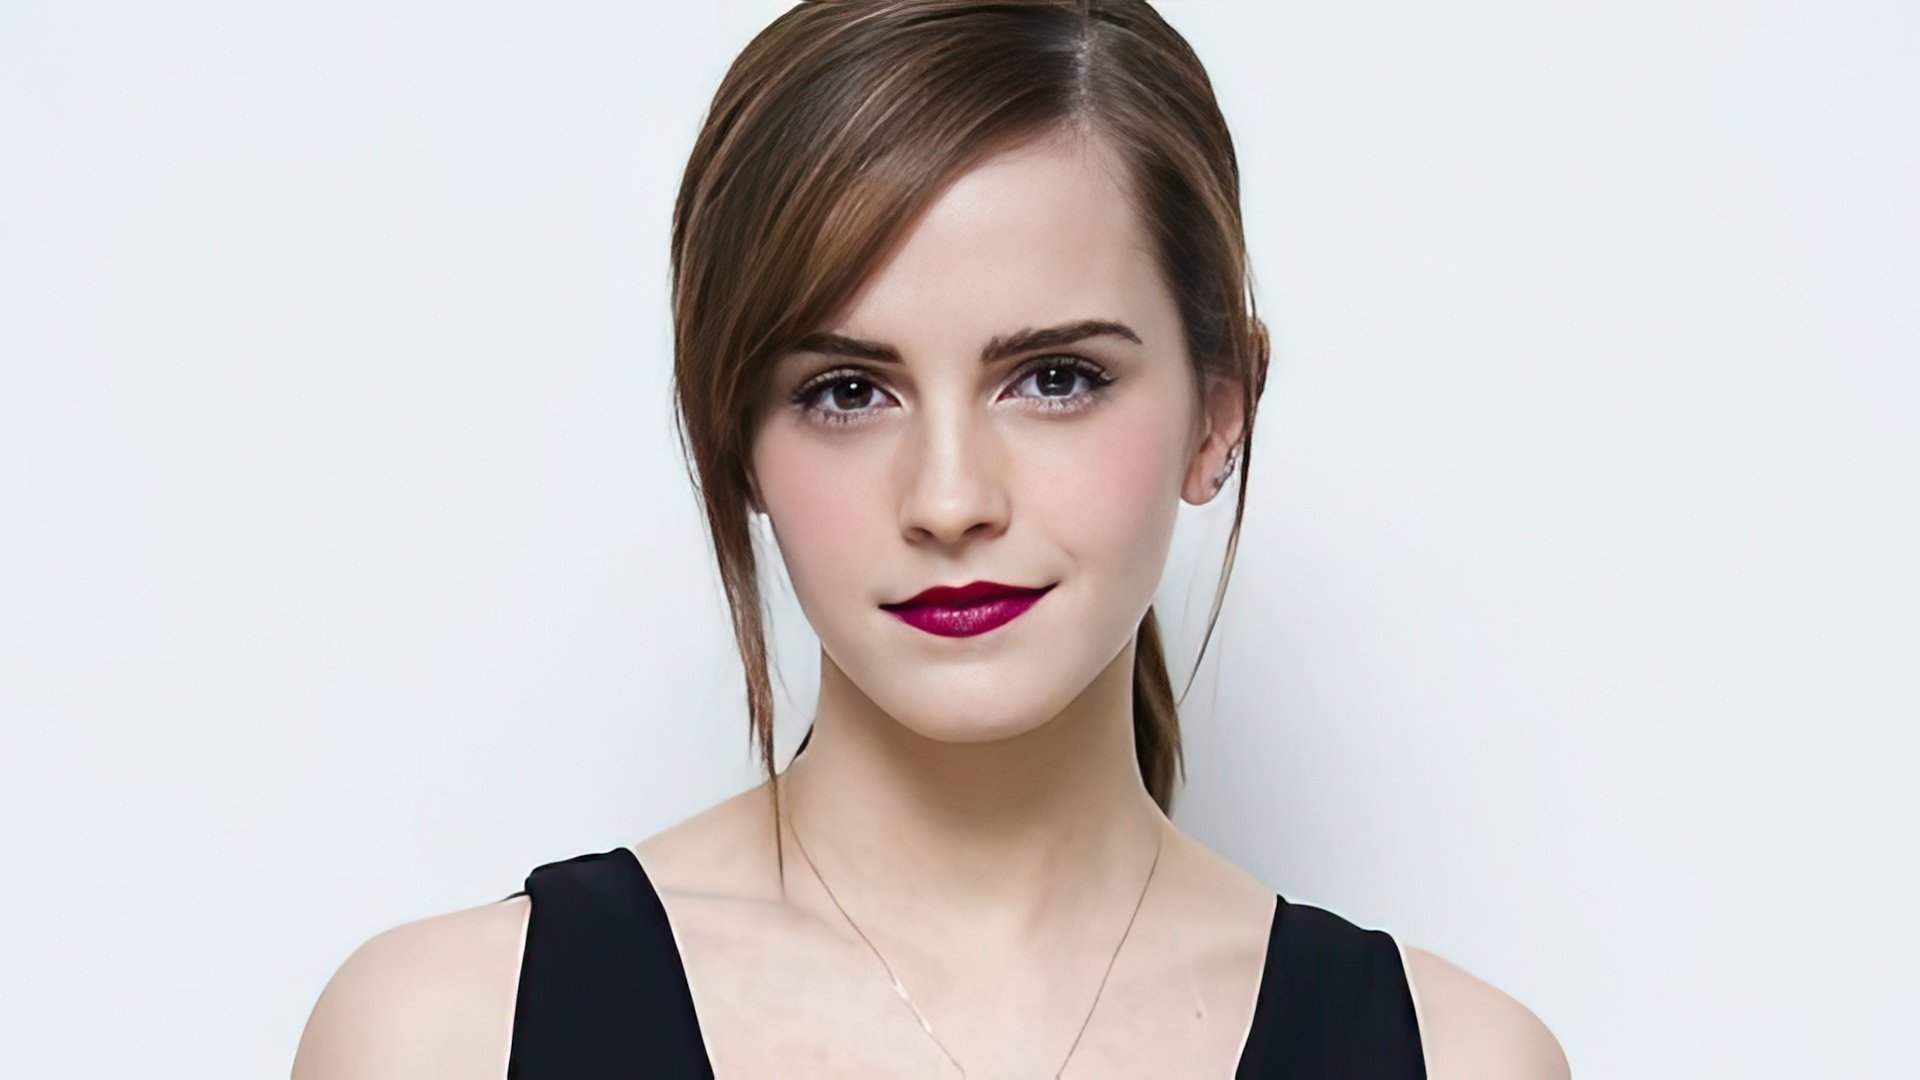 Actress and fashion model Emma Watson